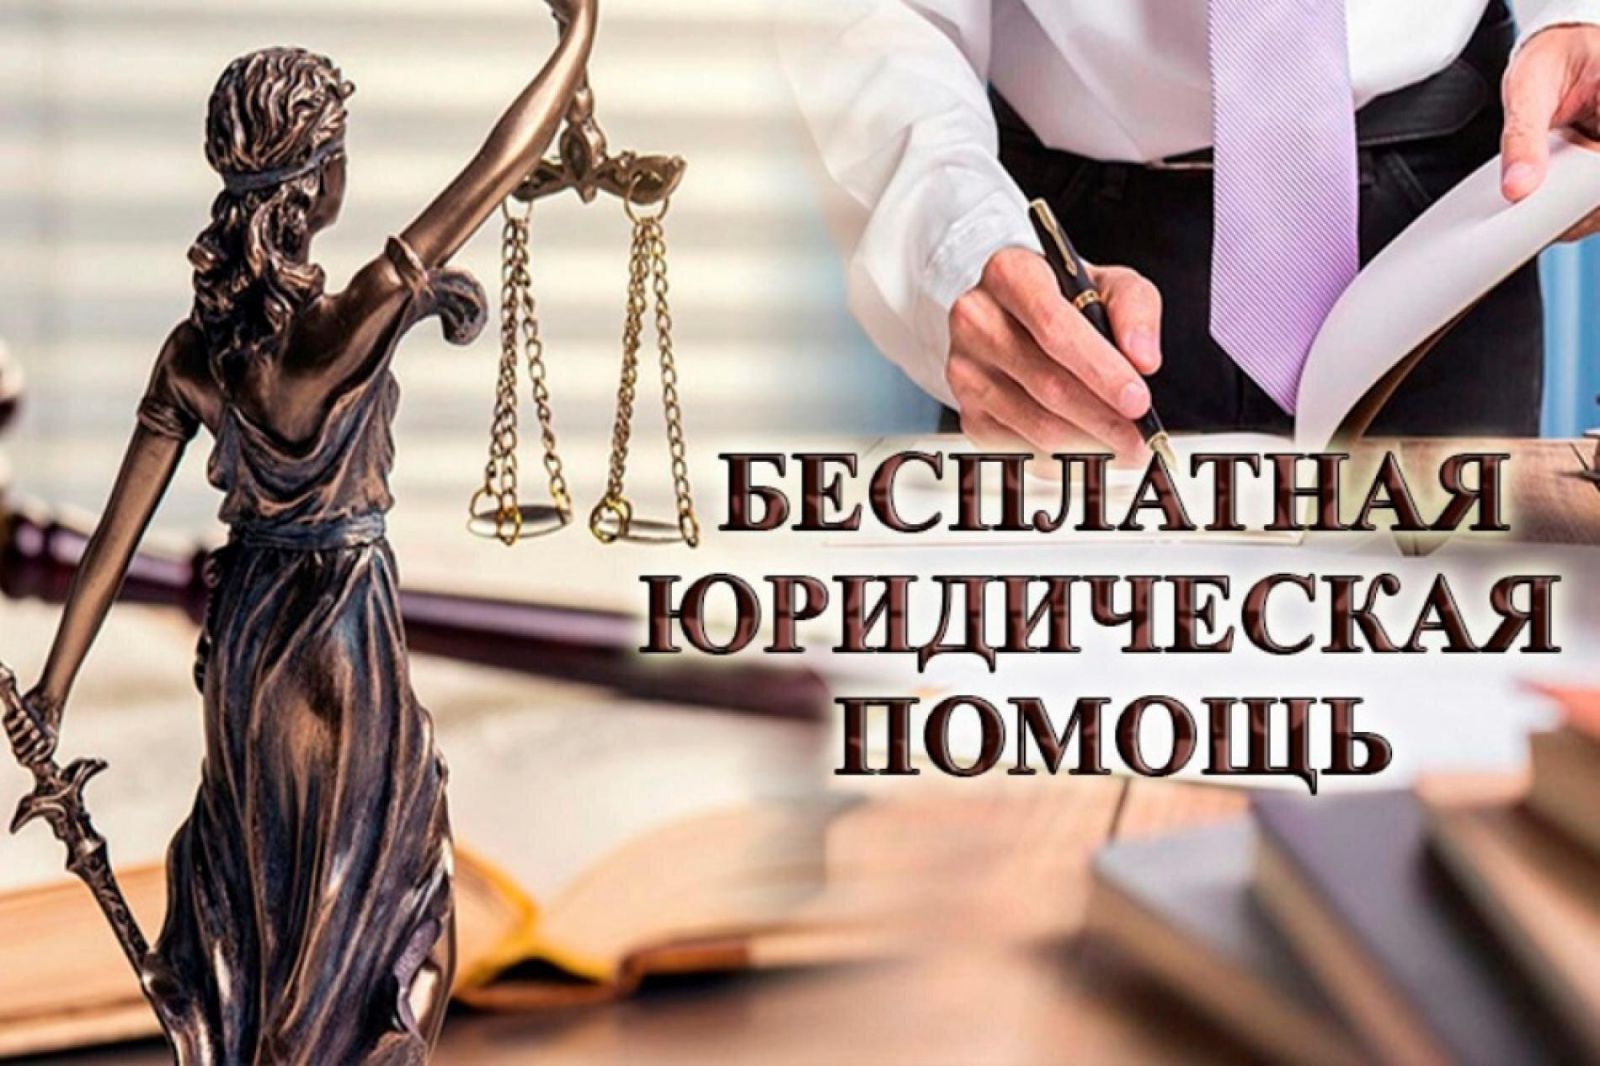 Бесплатная юридическая помощь администрации Краснодарского края